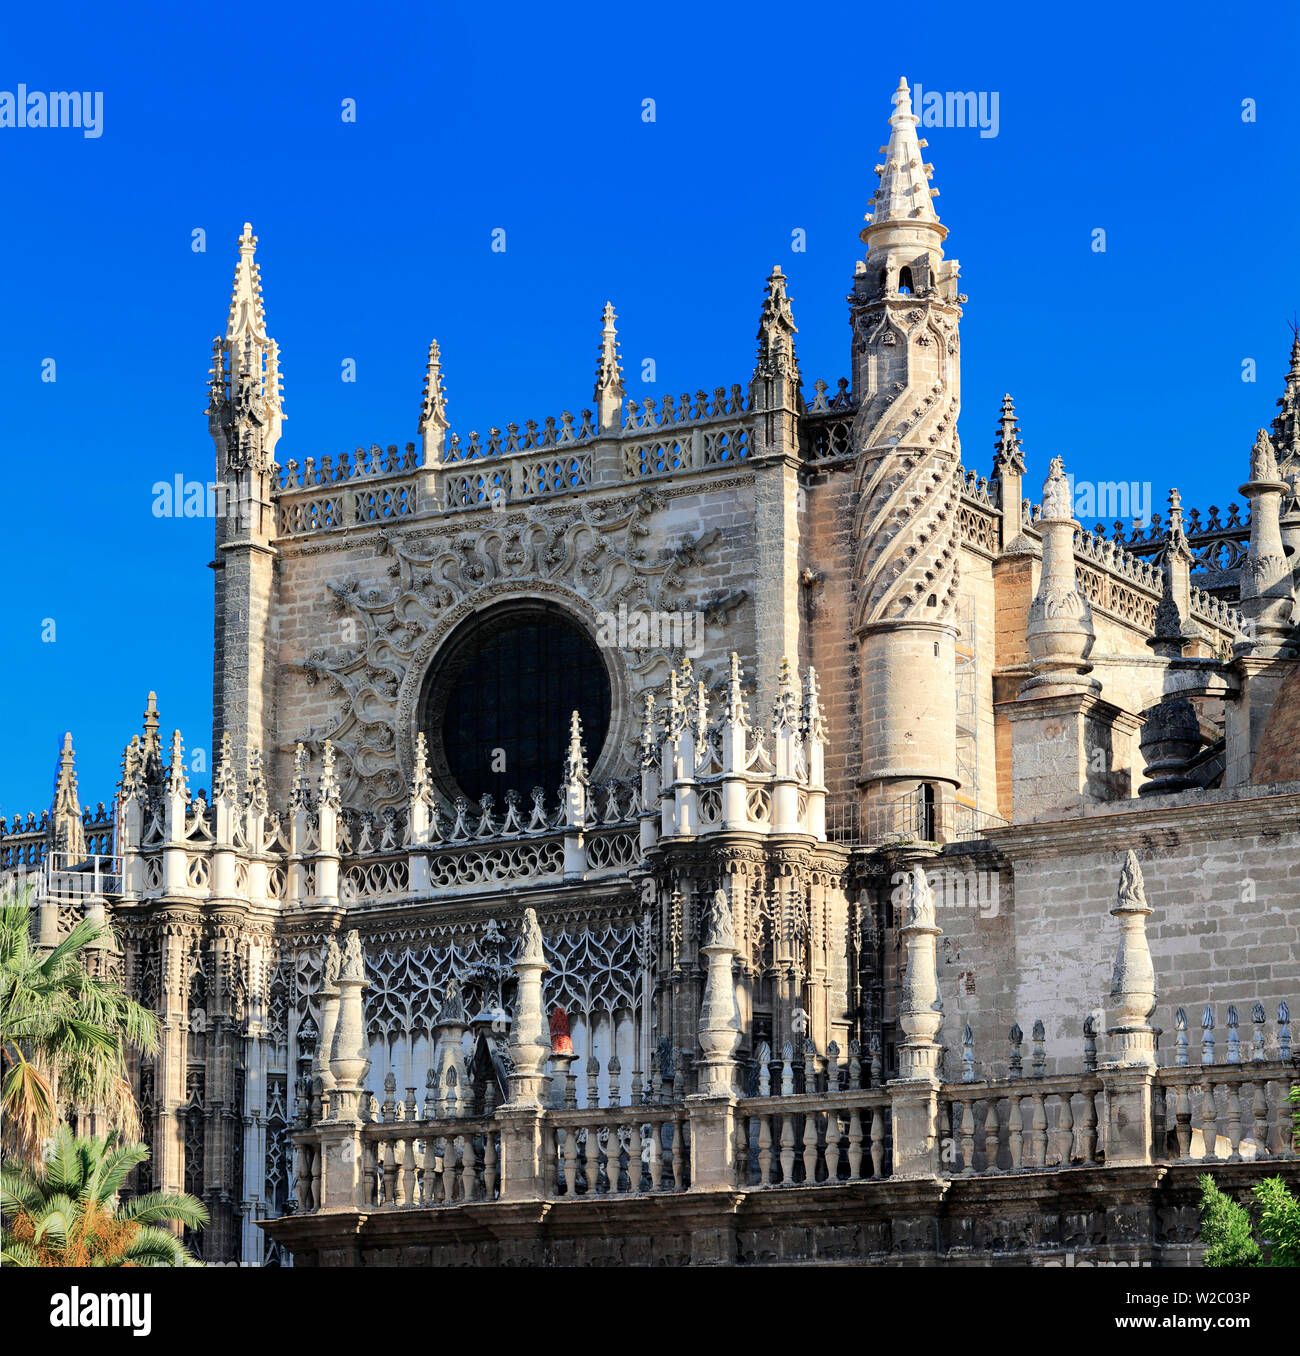 Porte fenêtre Prince Rose, la cathédrale Sainte Marie de l'Voir (Catedral de Santa Maria de la Sede), Séville, Andalousie, Espagne Banque D'Images